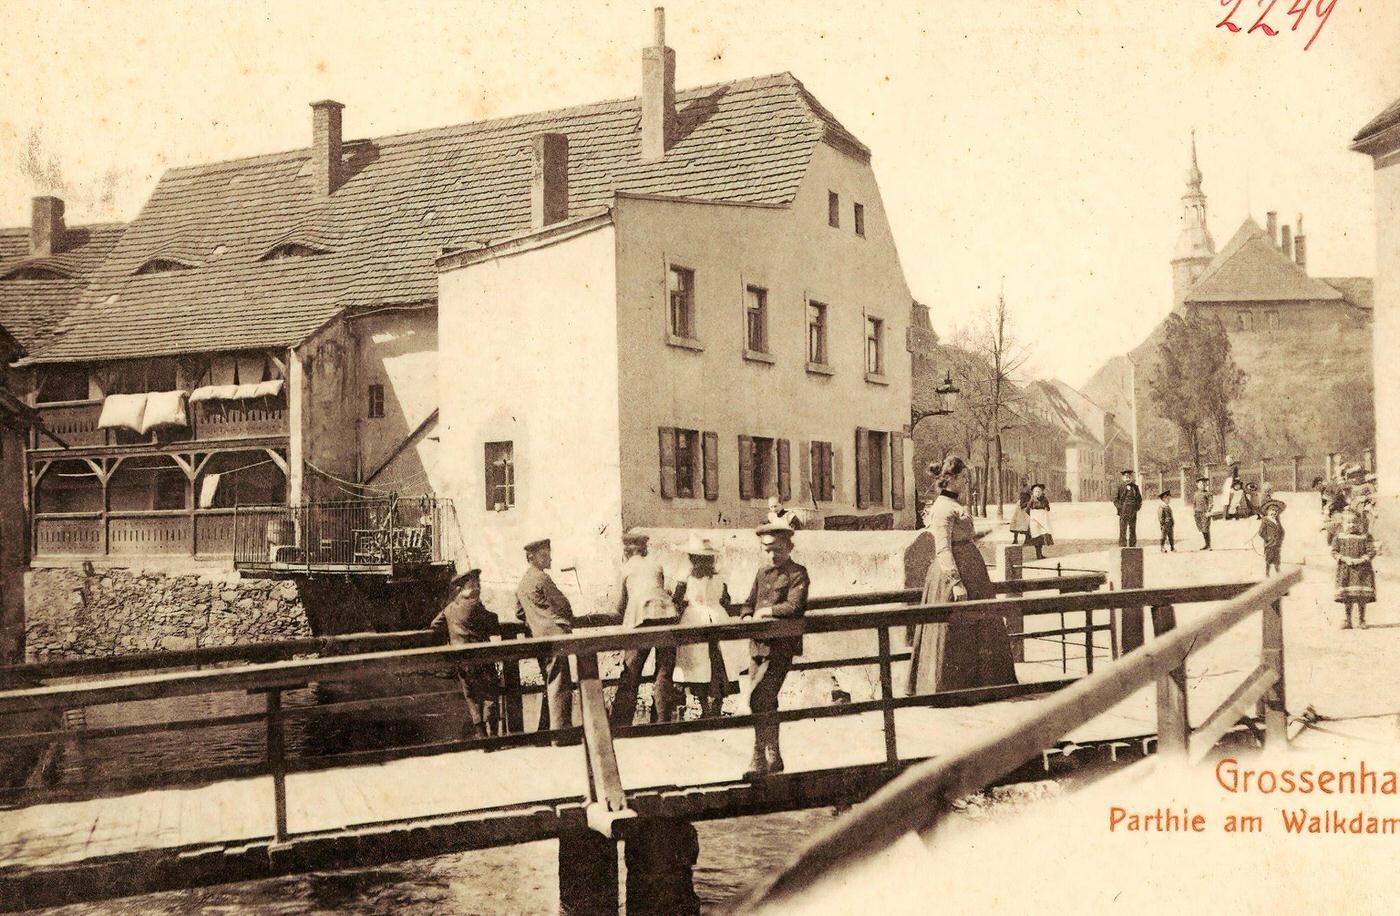 Bridges in Landkreis Meissen, Churches in Grossenhain, Landkreis Meissen, Grossenhain, 1902.